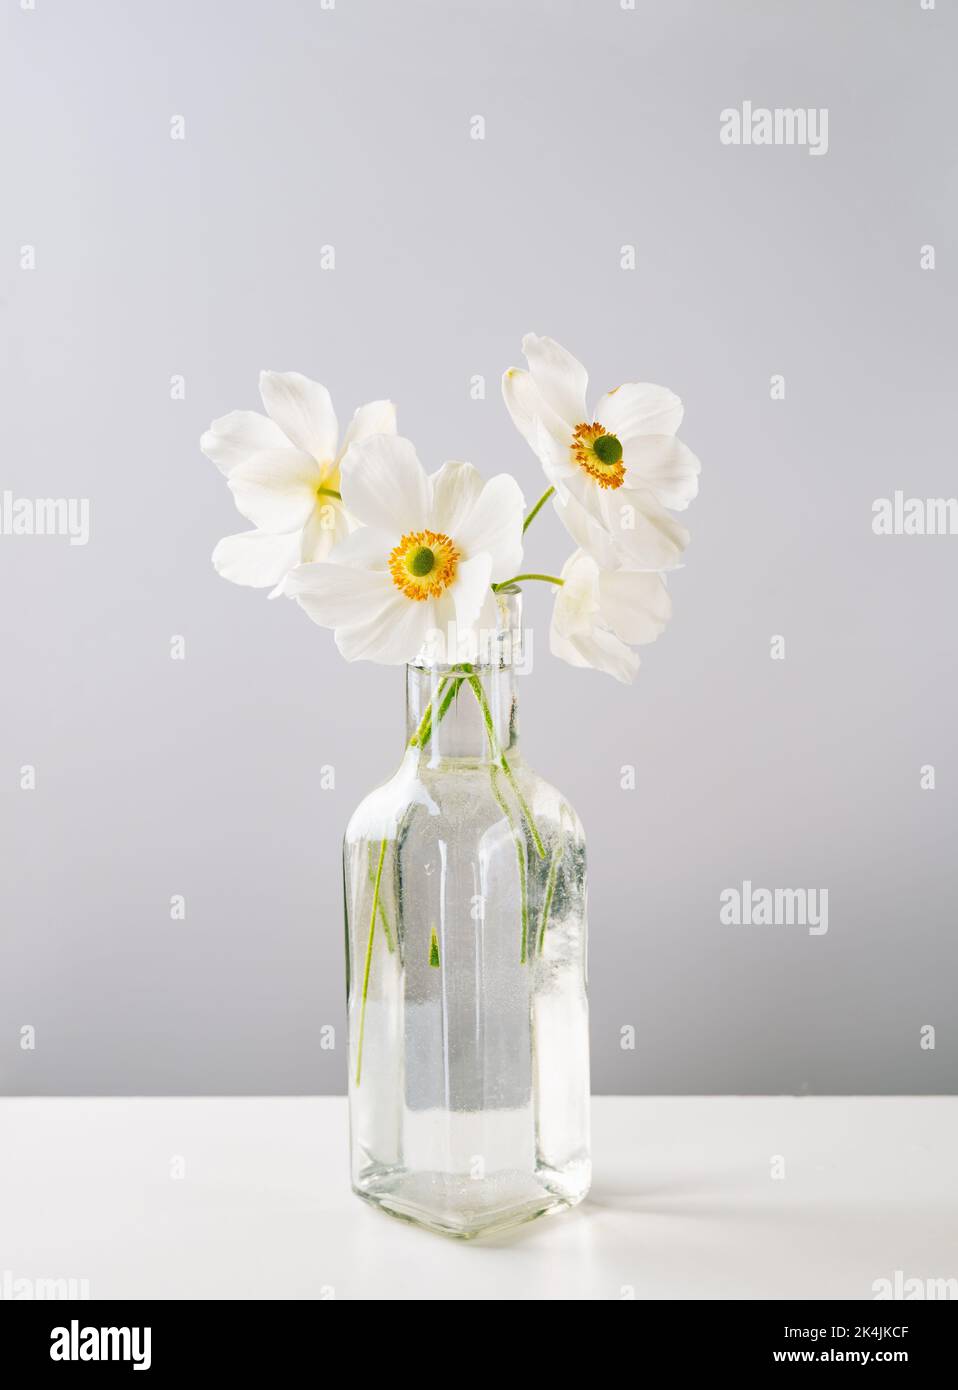 Delicato anemone bianco fiori in vaso di vetro su sfondo grigio chiaro Foto Stock